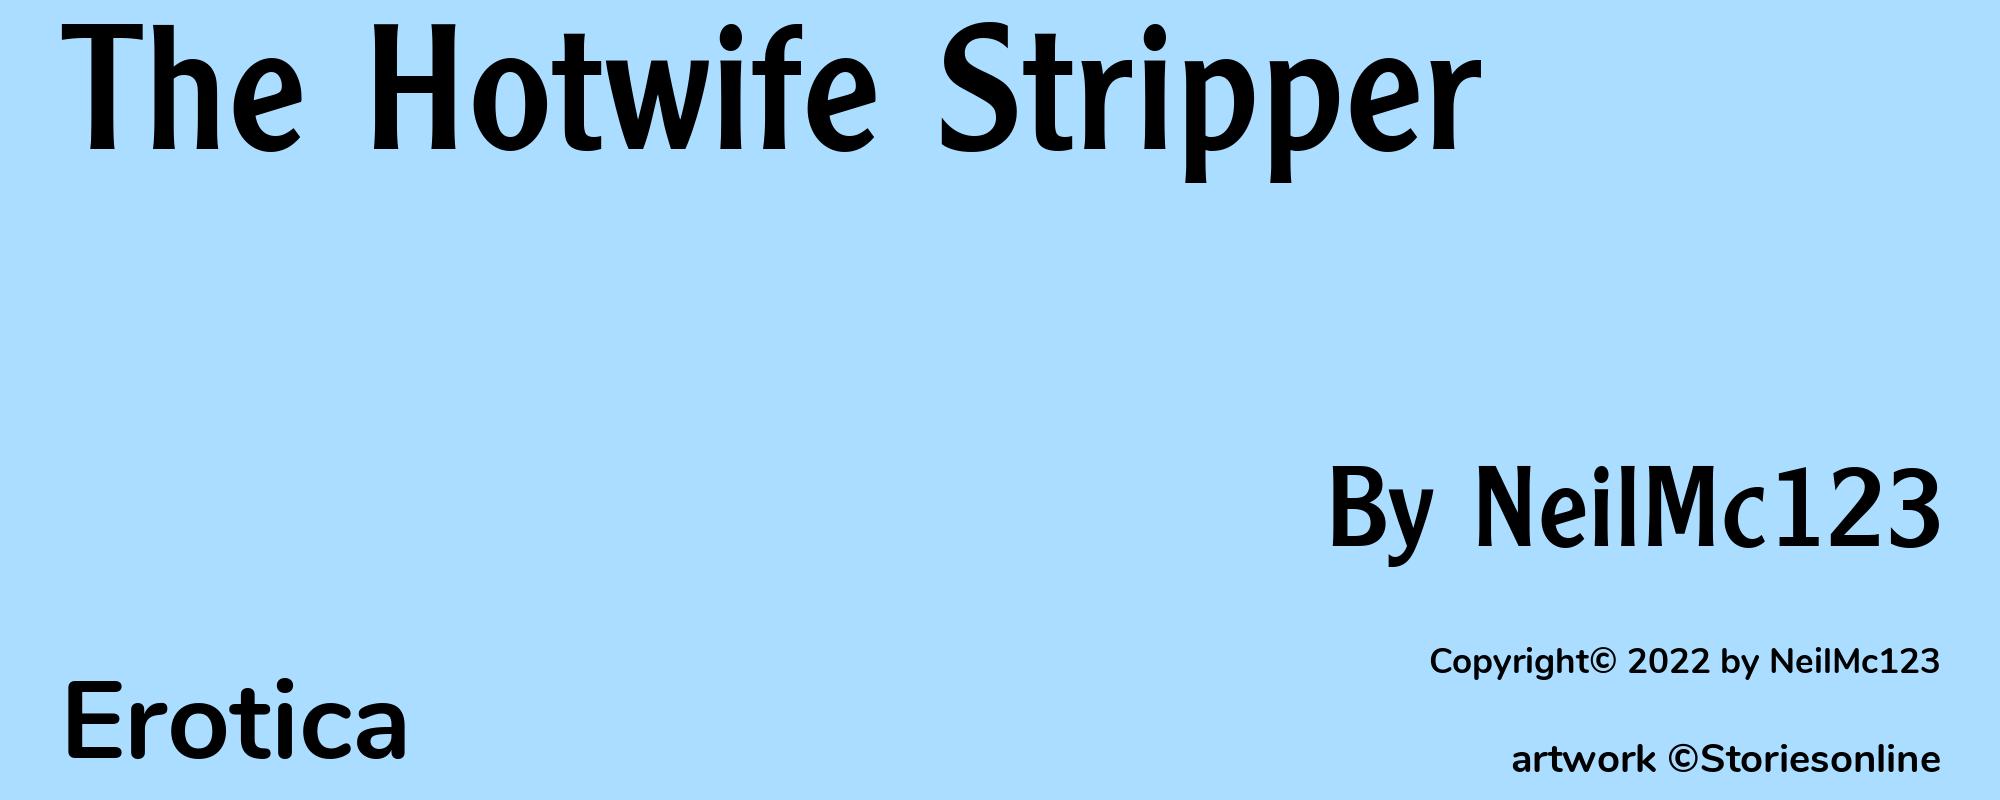 The Hotwife Stripper - Cover